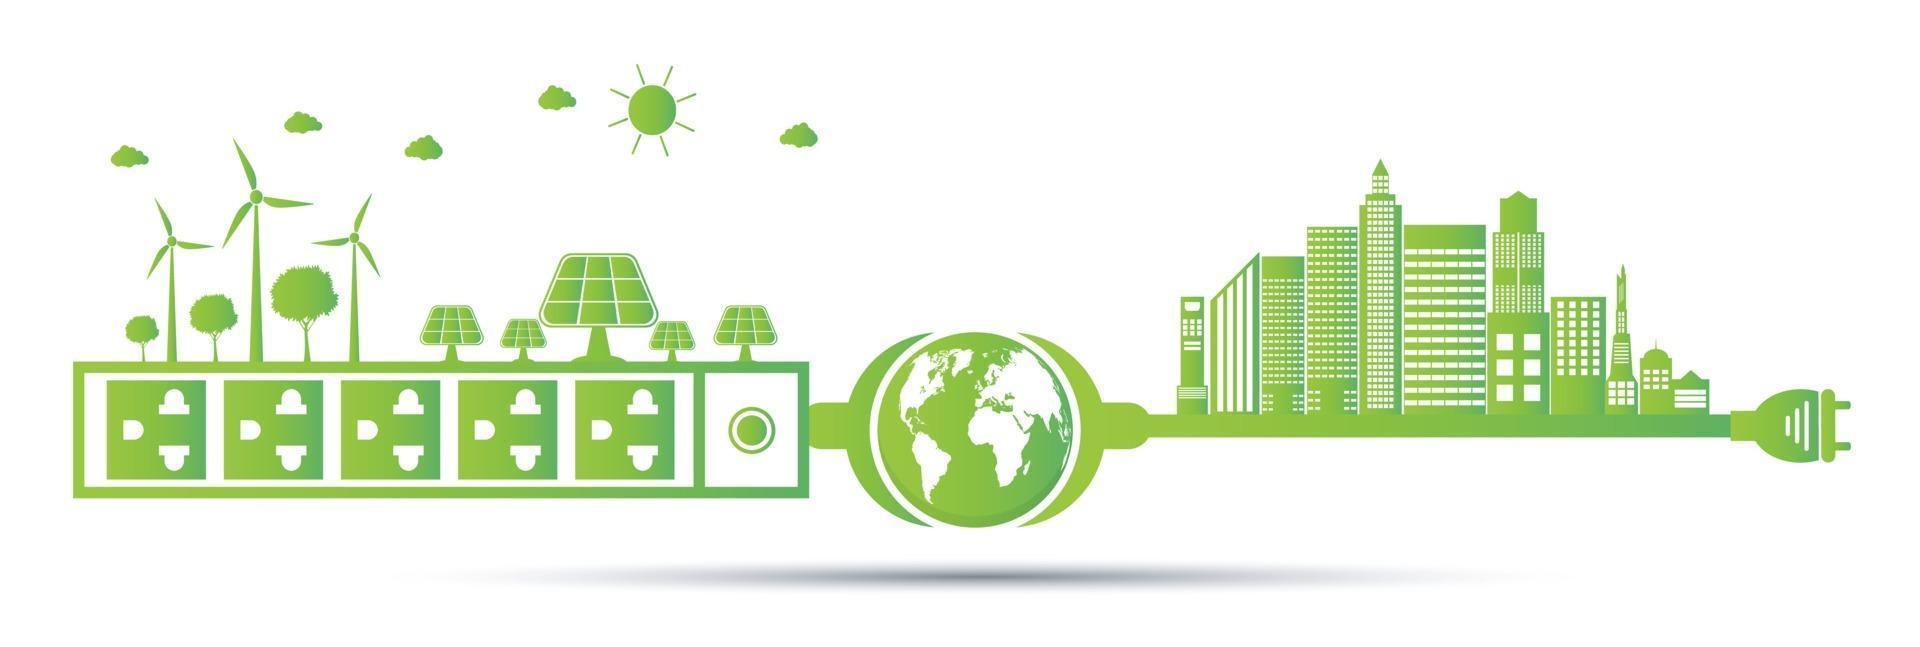 Öko-Green-Energy-Städte-Konzept vektor